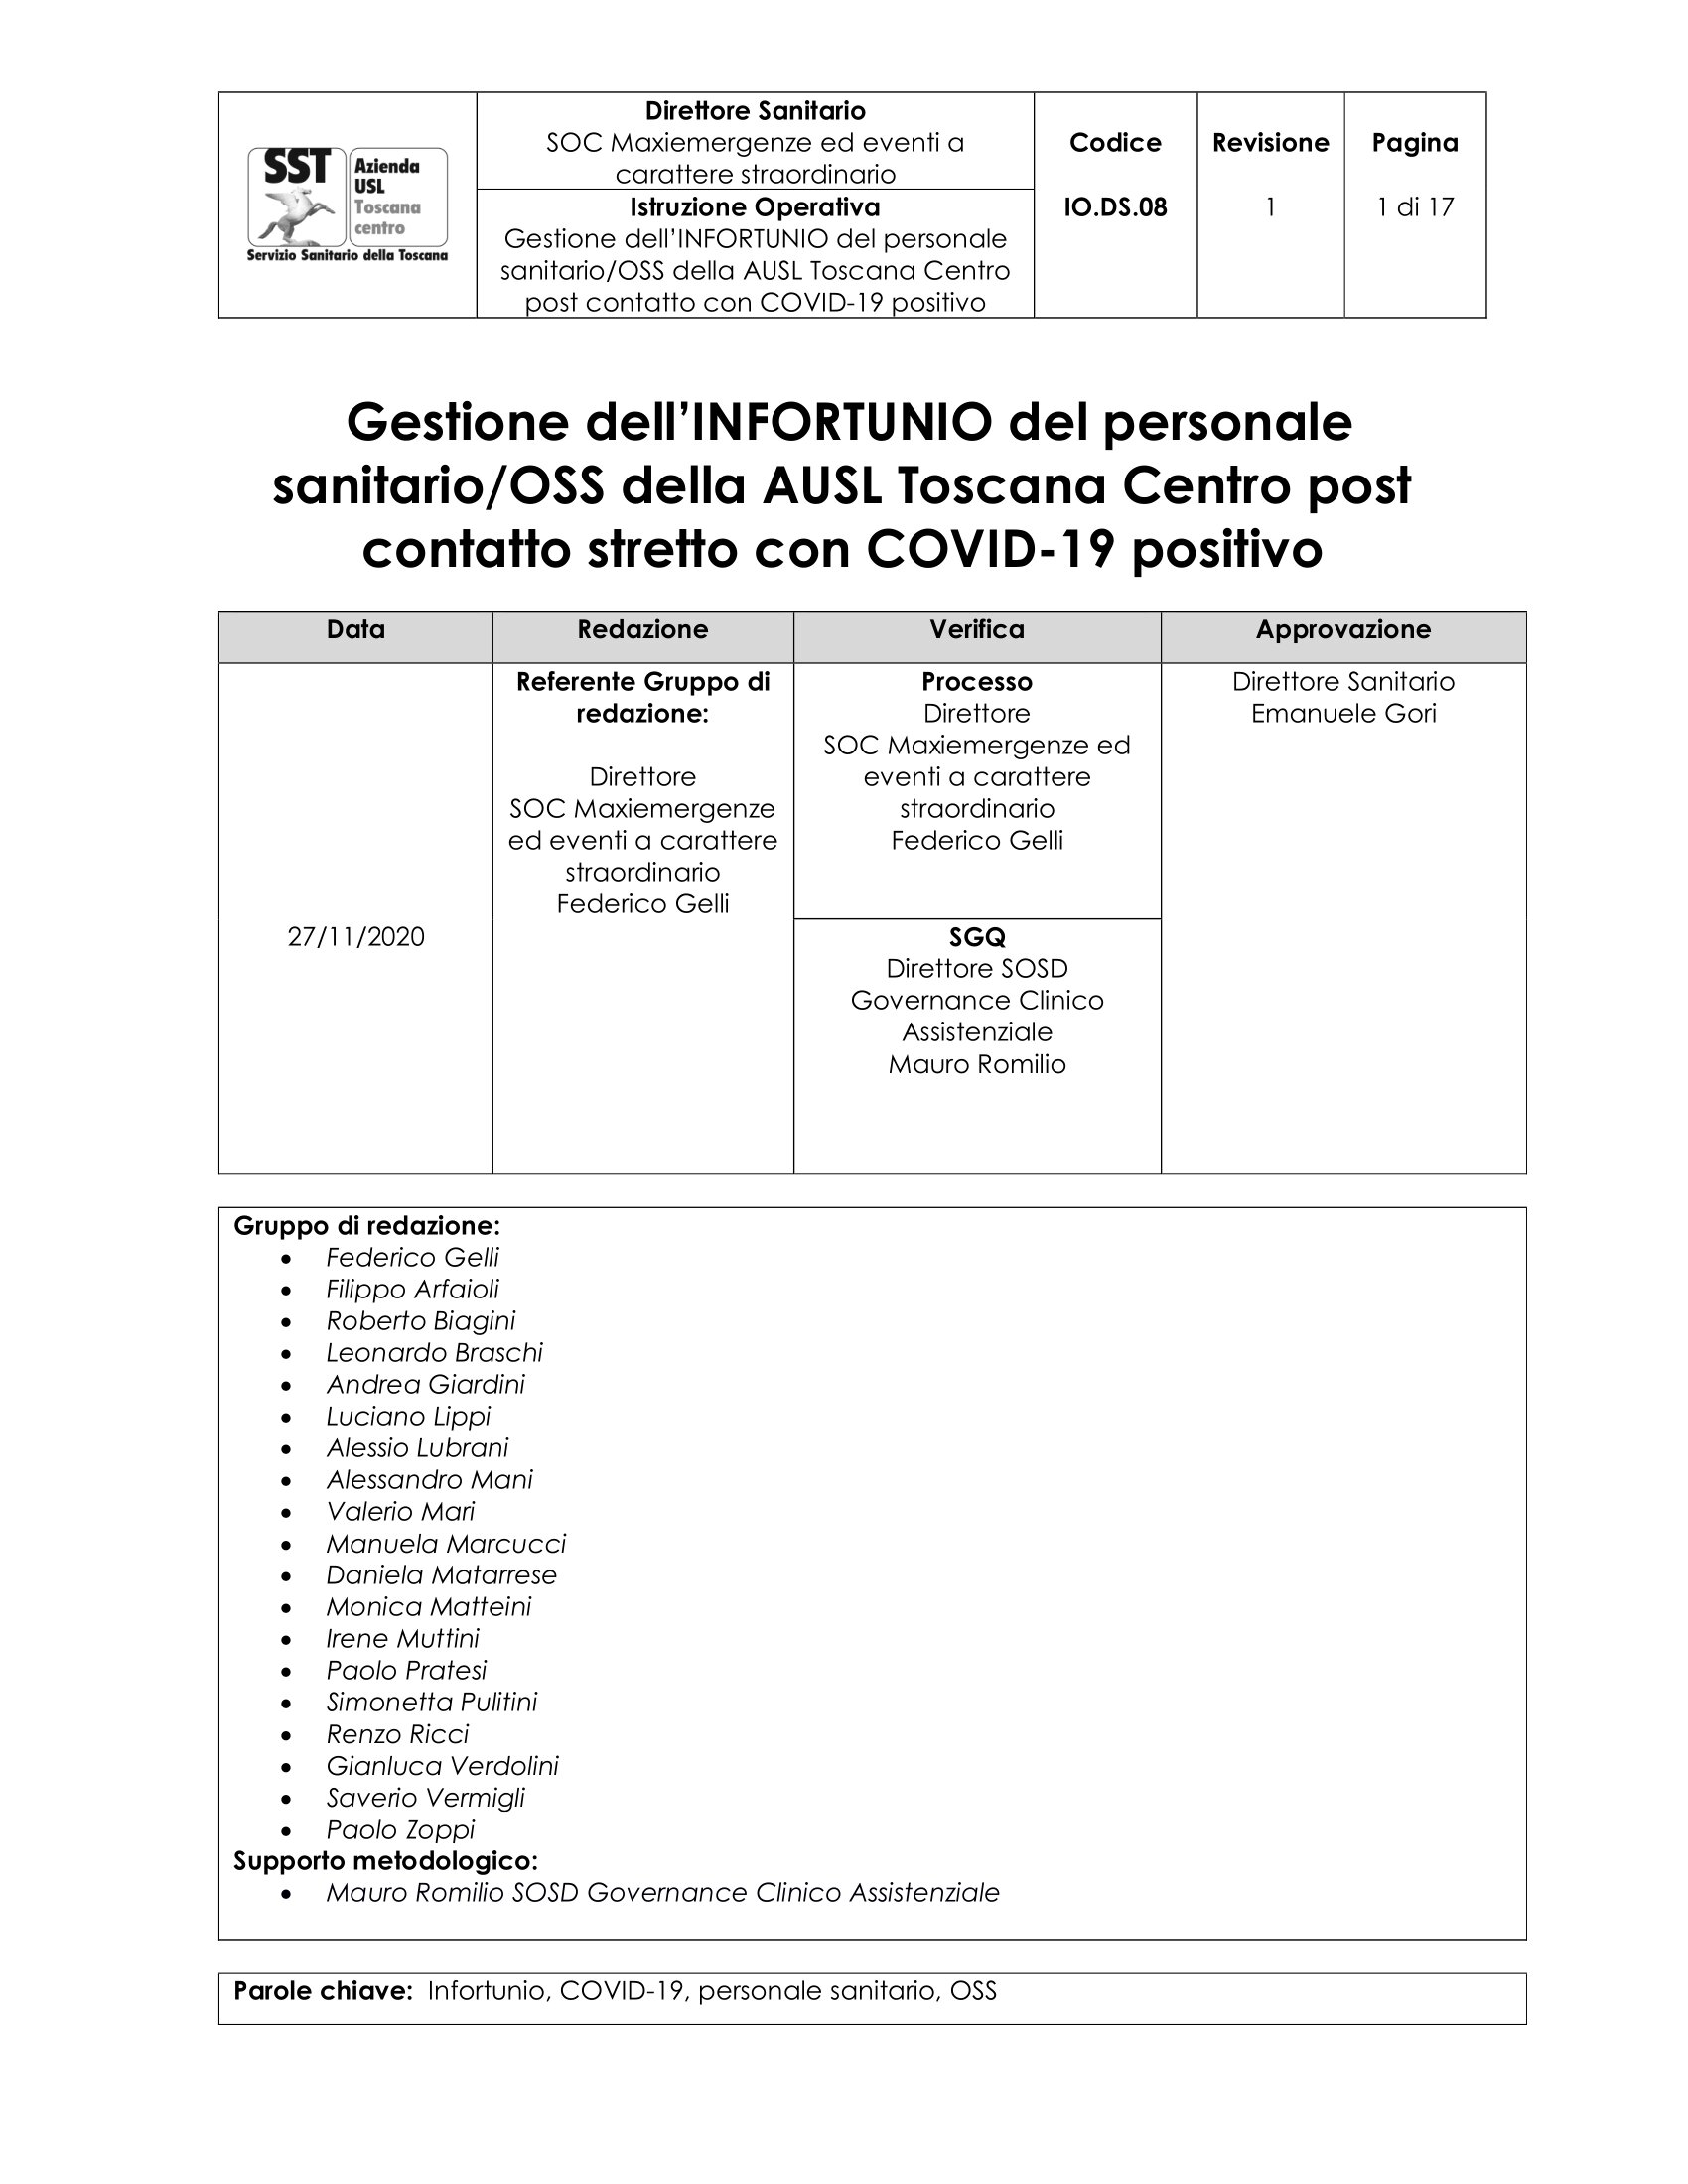 IO.DS.08 rev.1 Gestione dell’INFORTUNIO del personale sanitario/OSS della AUSL Toscana Centro post contatto stretto con COVID-19 positivo